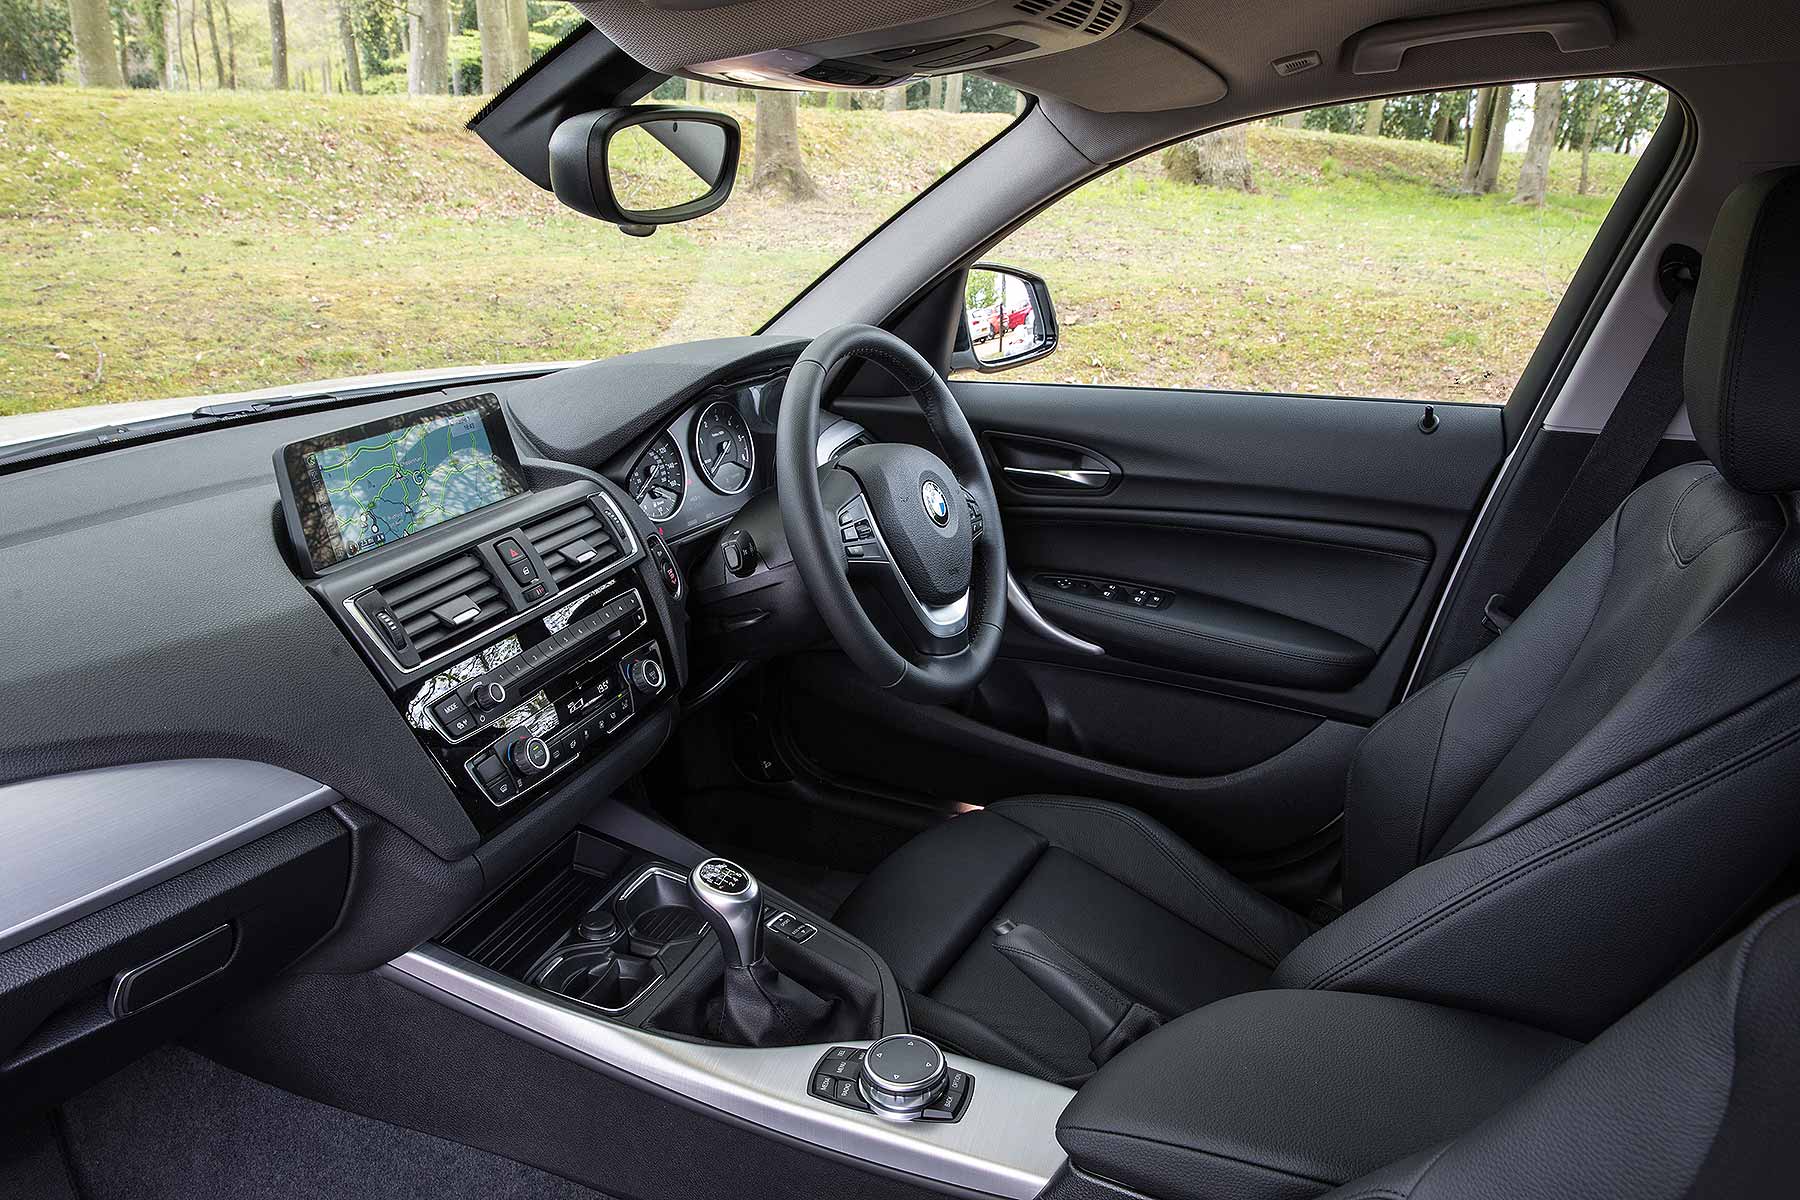 BMW 116d EfficientDynamics Plus 2015